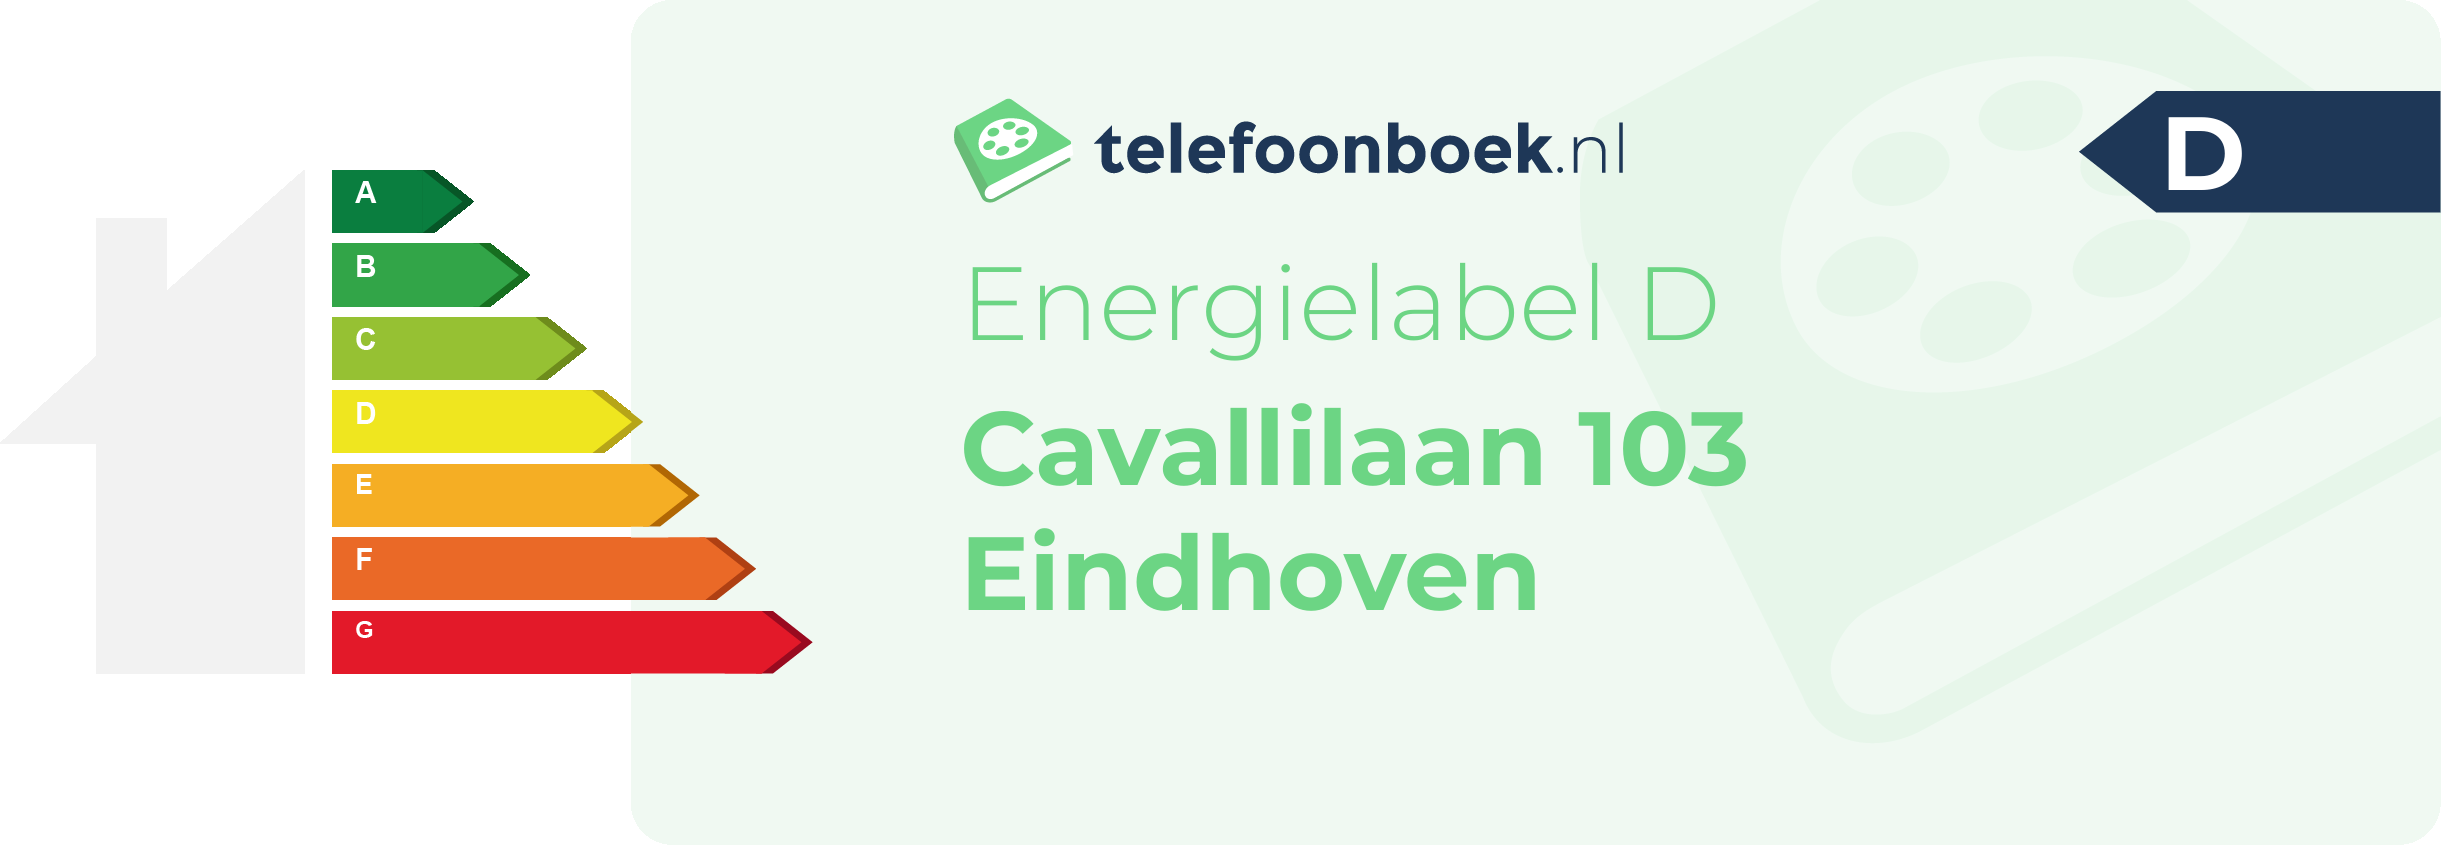 Energielabel Cavallilaan 103 Eindhoven